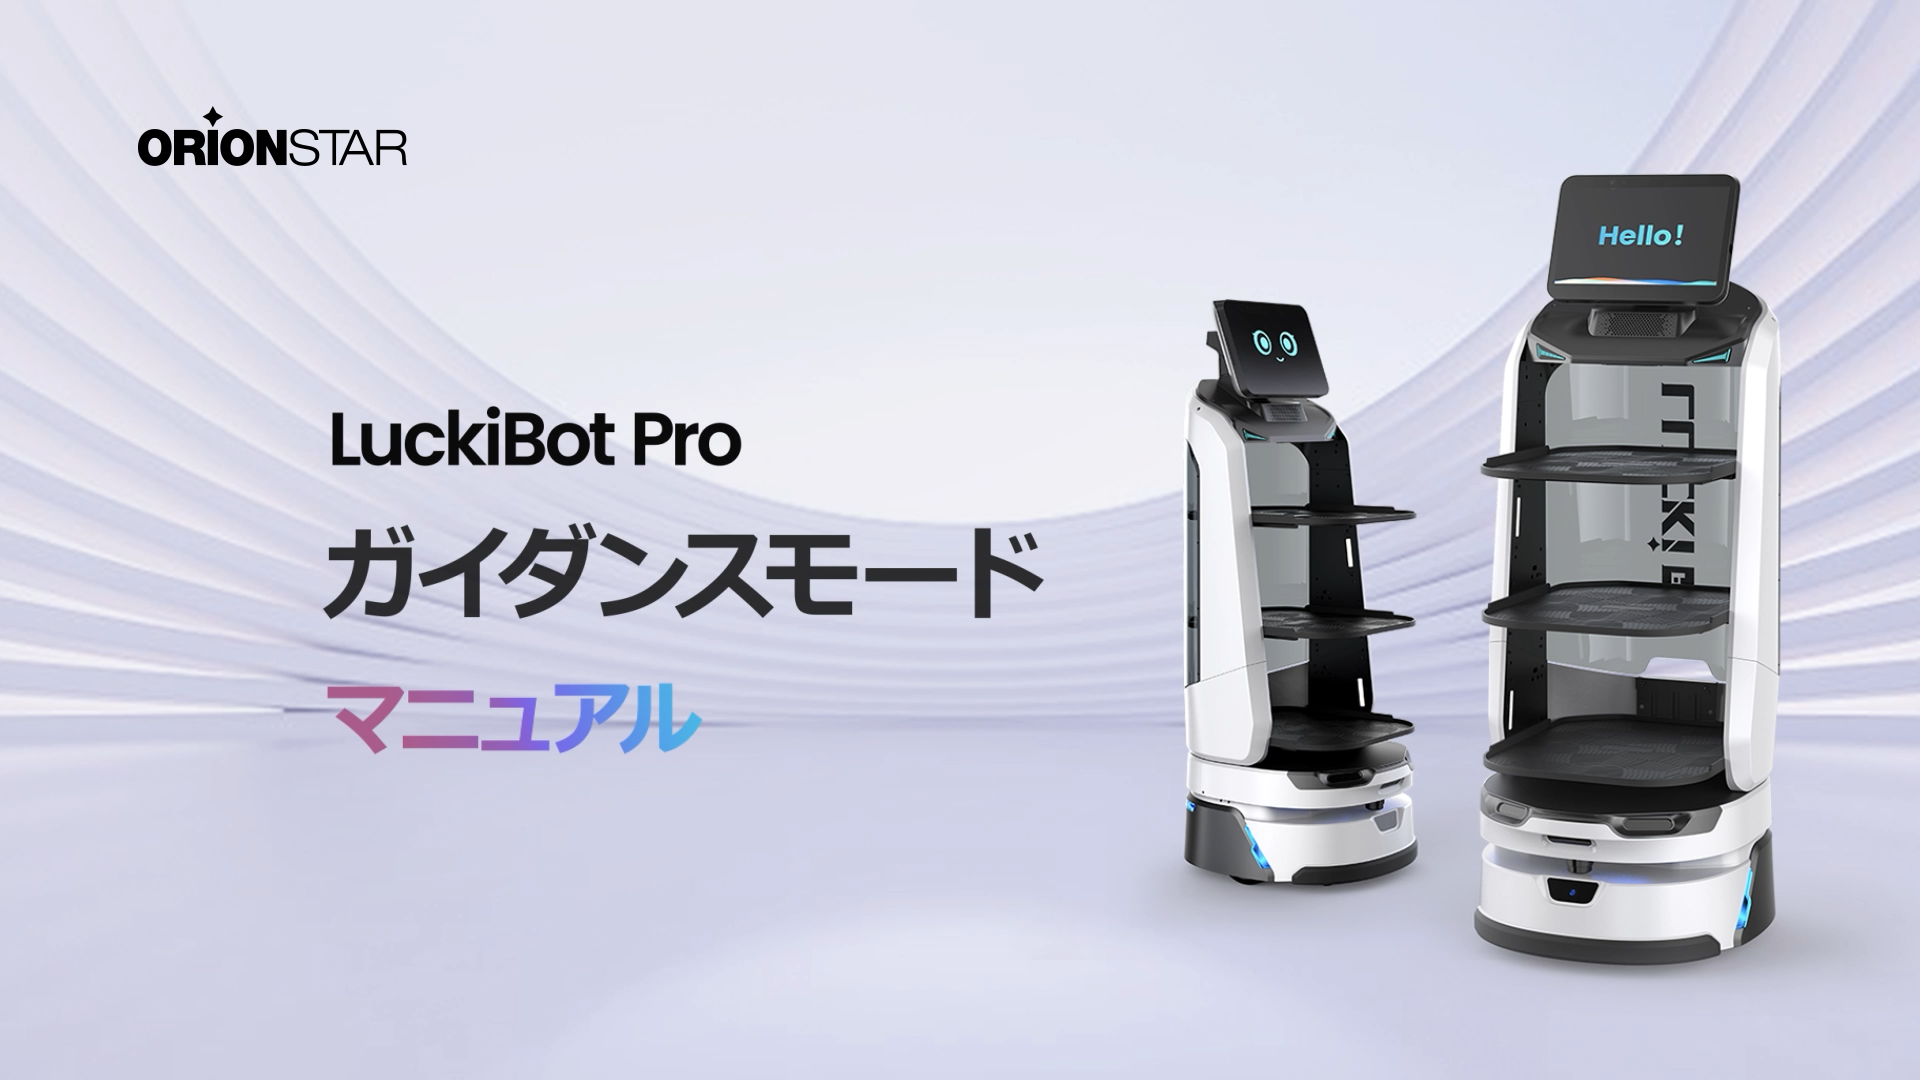 LuckiBot Proのガイダンスモードをご覧ください。